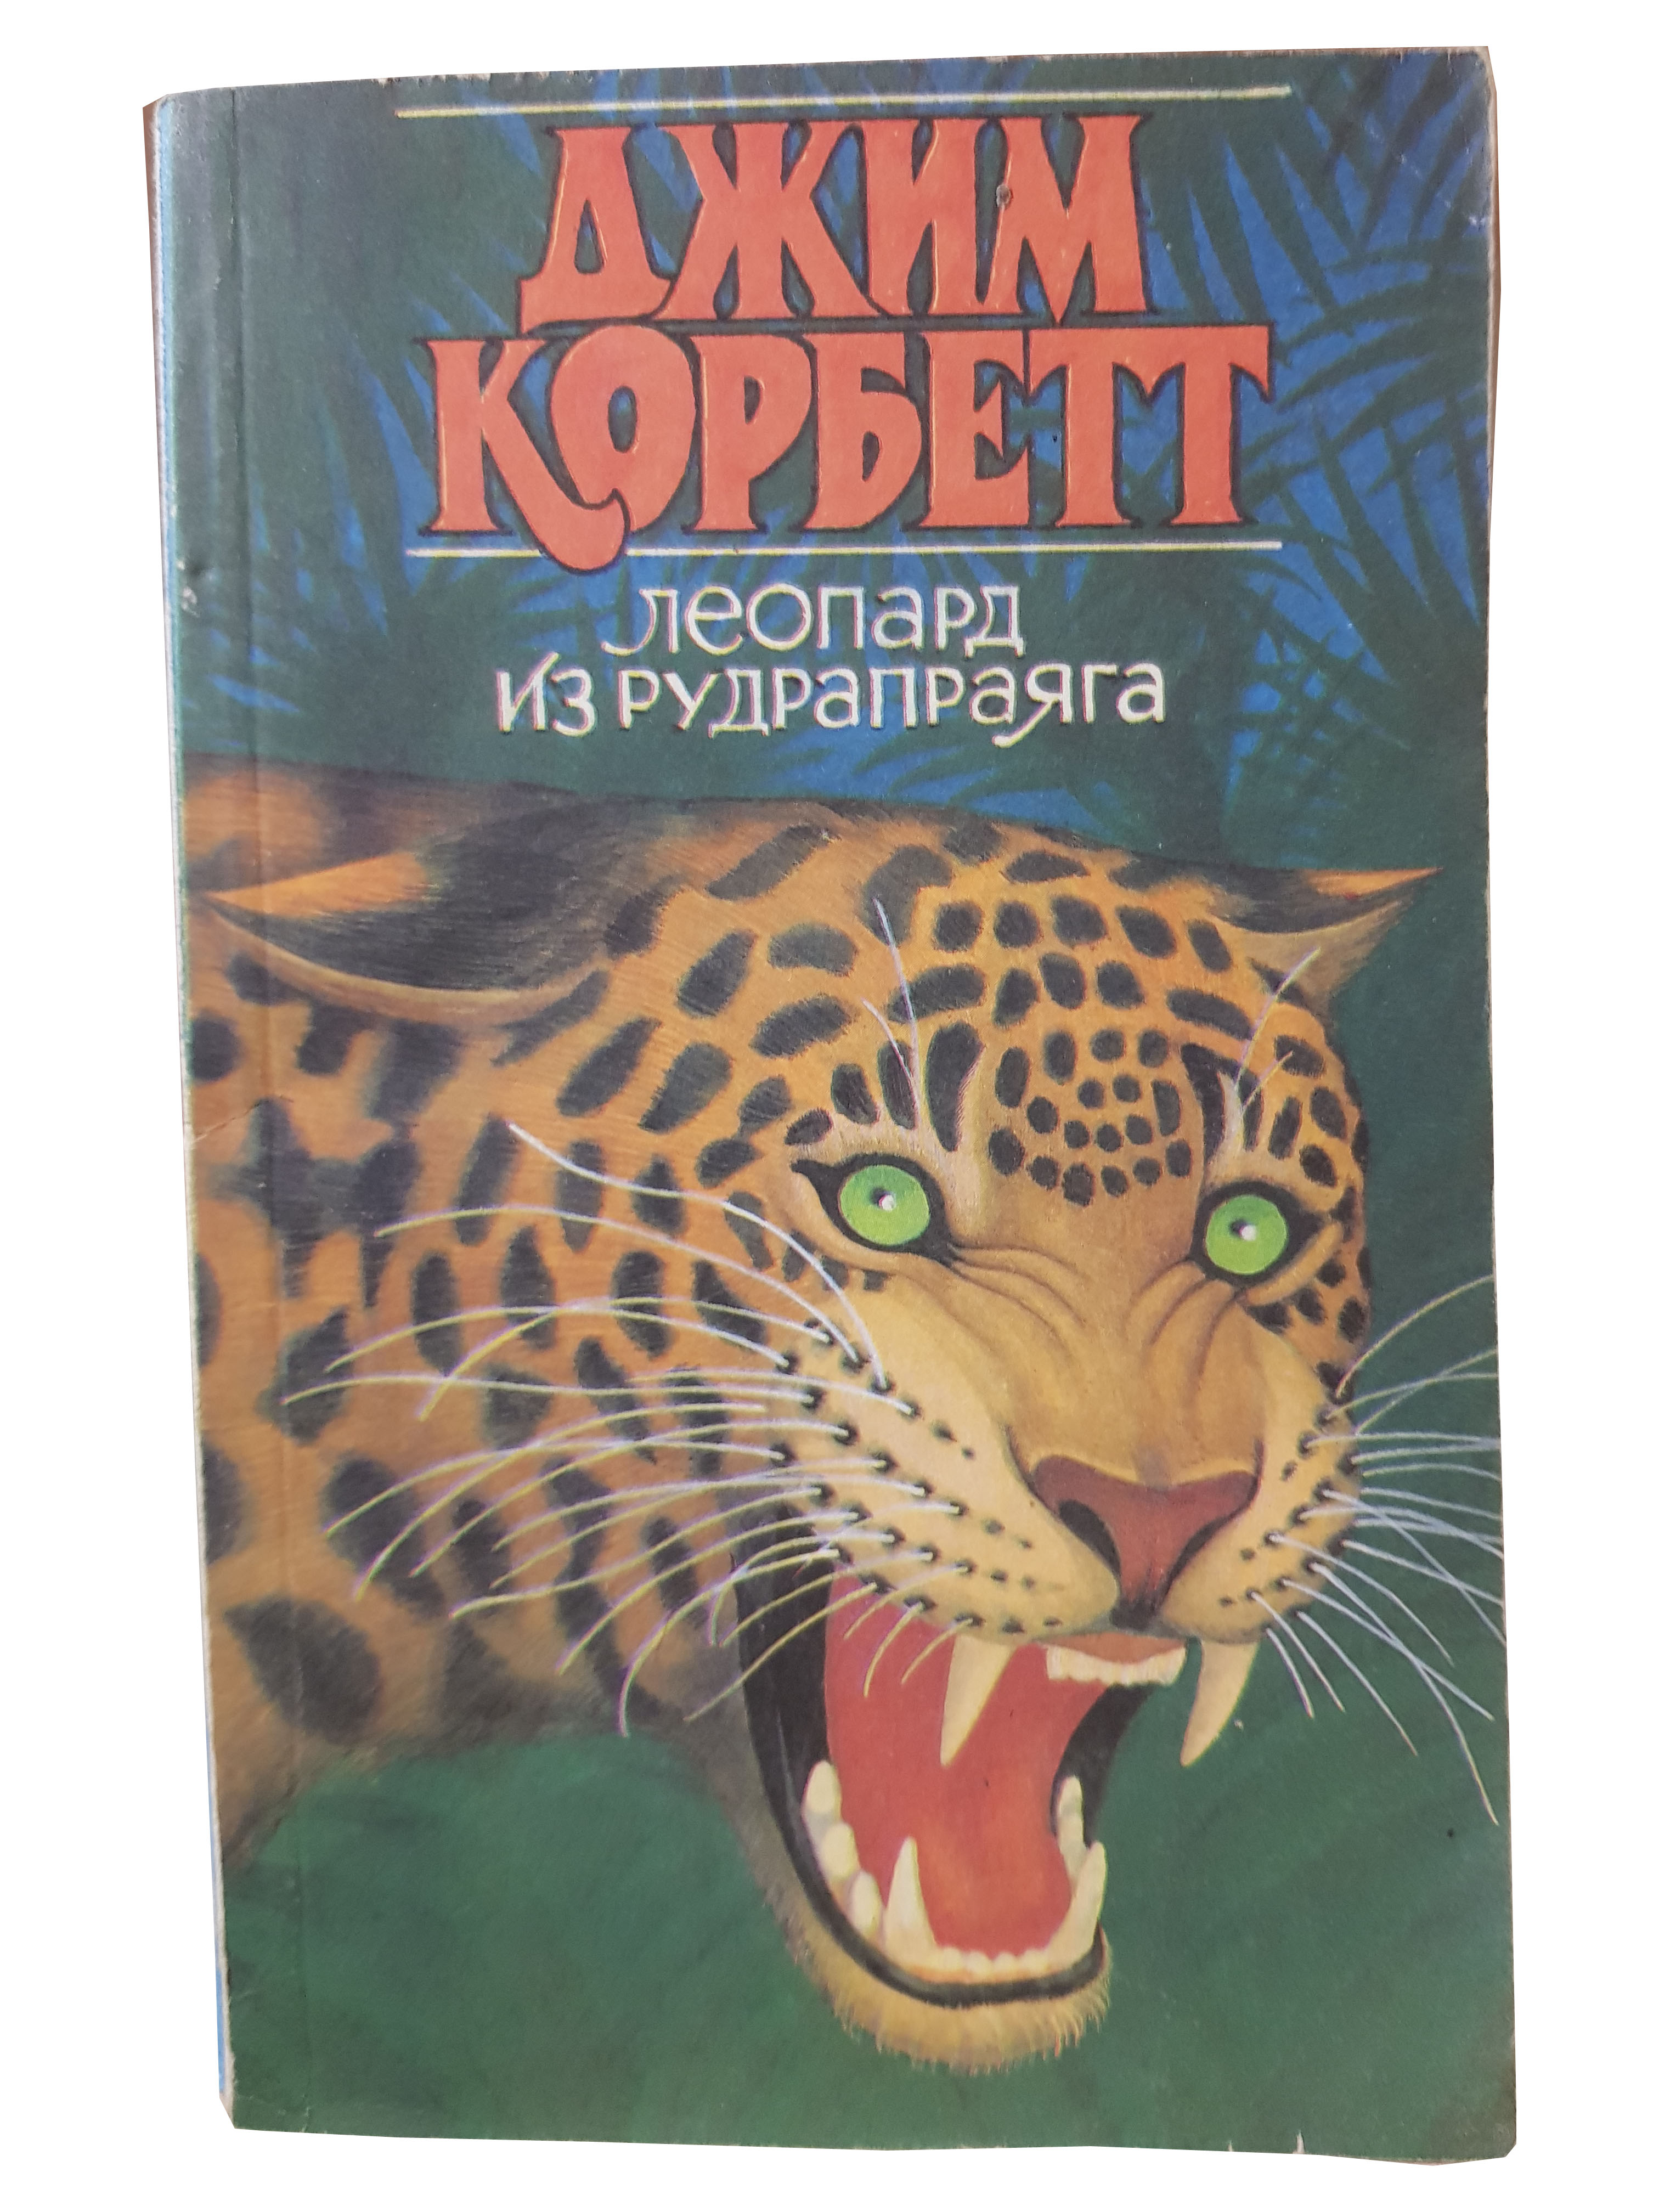 Джим Корбетт (Леопард из Рудрапраяга).jpg